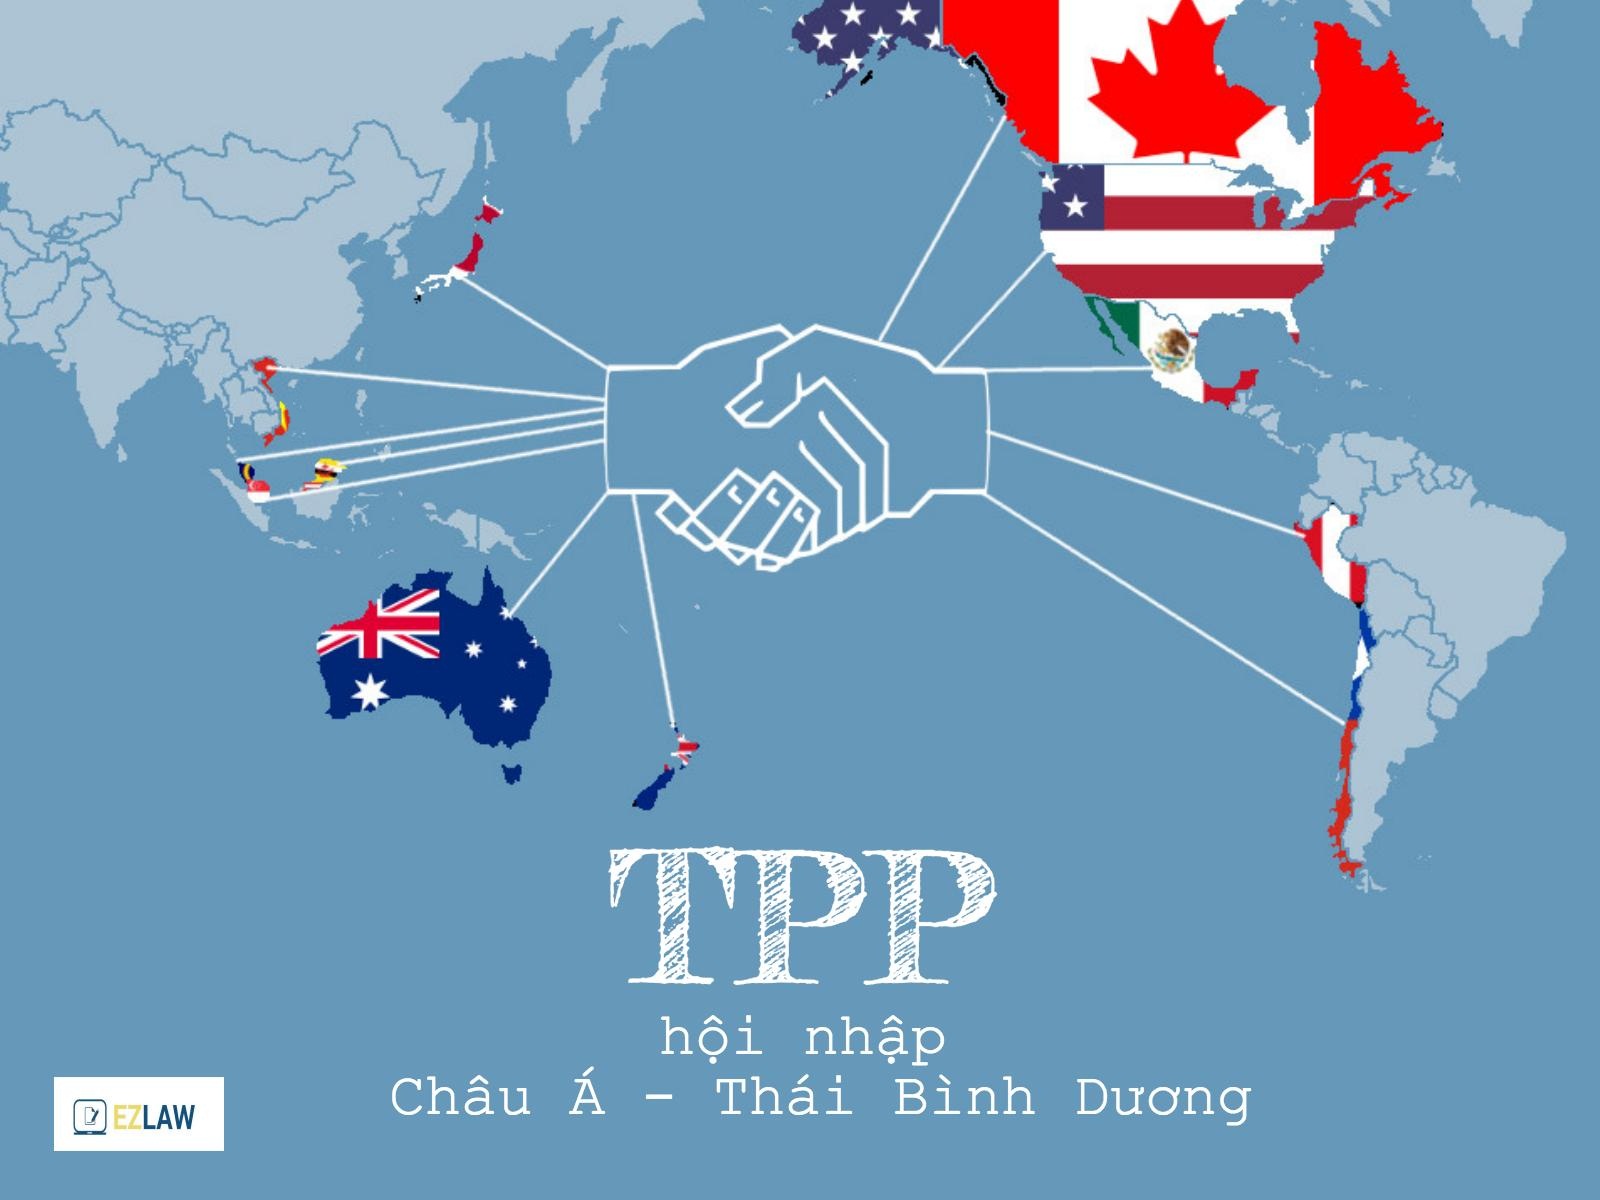 TPP, viết tắt của từ Trans-Pacific Strategic Economic Partnership Agreement (Hiệp định đối tác kinh tế xuyên Thái Bình Dương), là một hiệp định, thỏa thuận thương mại tự do giữa 12 quốc gia với mục đích hội nhập nền kinh tế khu vực Châu Á - Thái Bình Dương. 12 thành viên của TPP bao gồm: Australia, Brunei, Chile, Malaysia, Mexico, New Zealand, Canada, Peru, Singapore, Vietnam, Mỹ và Nhật Bản.